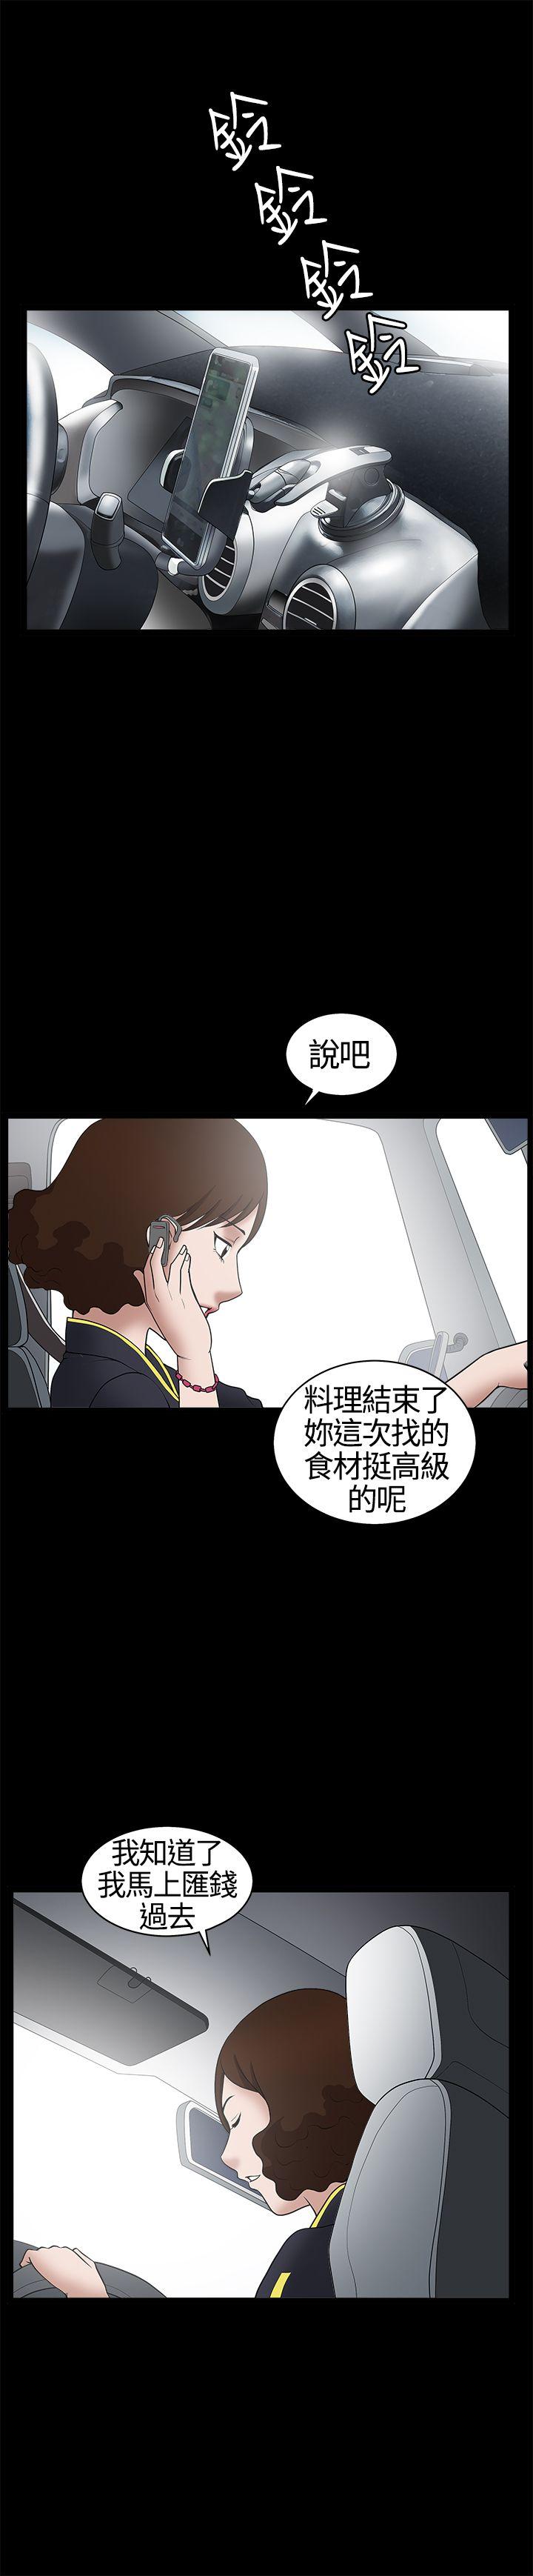 韩国污漫画 人妻性解放3:粗糙的手 第15话 34